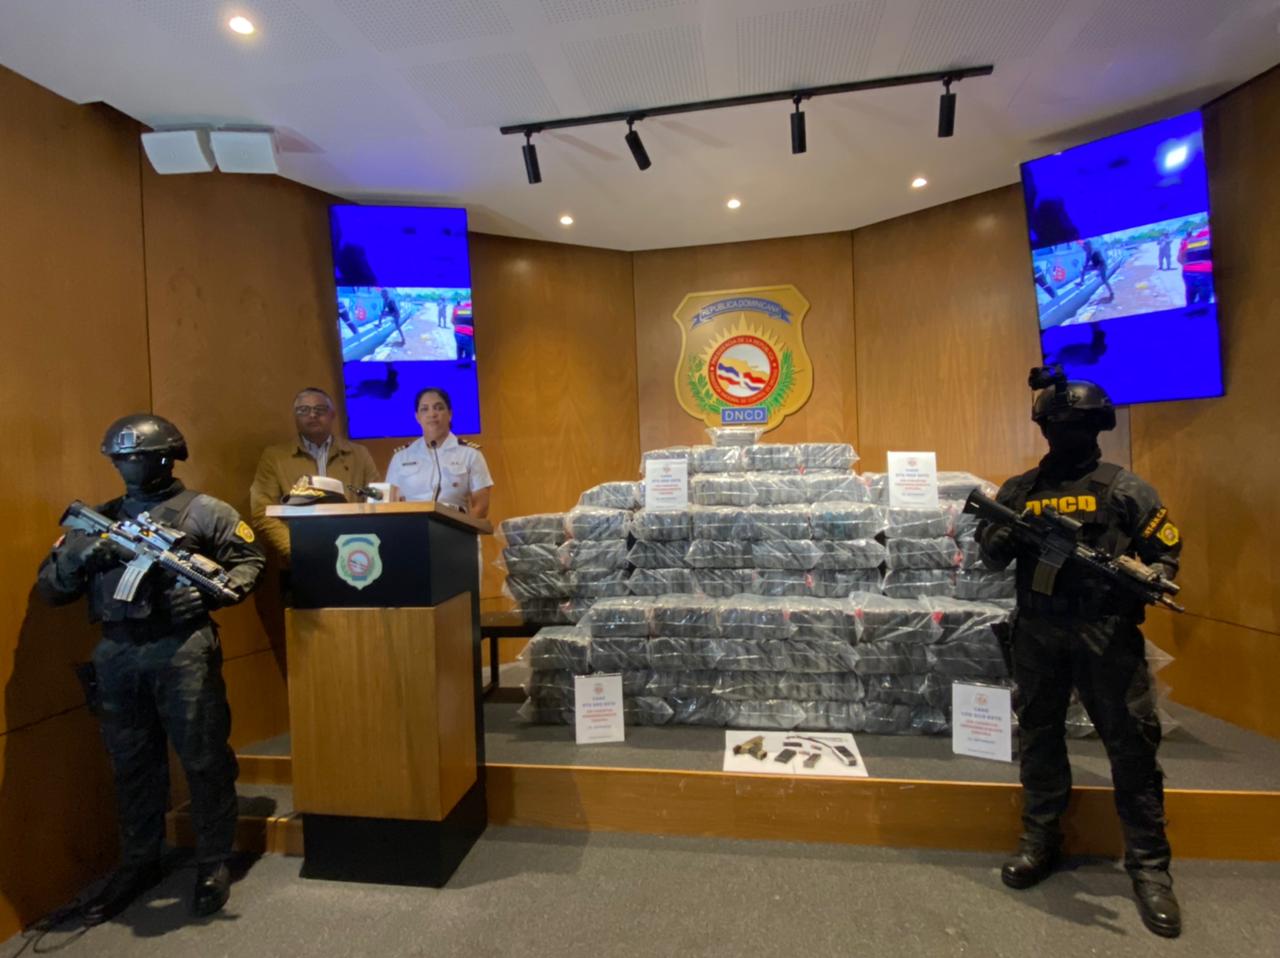 DNCD arresta tres en lancha con 590 paquetes presumiblemente cocaína